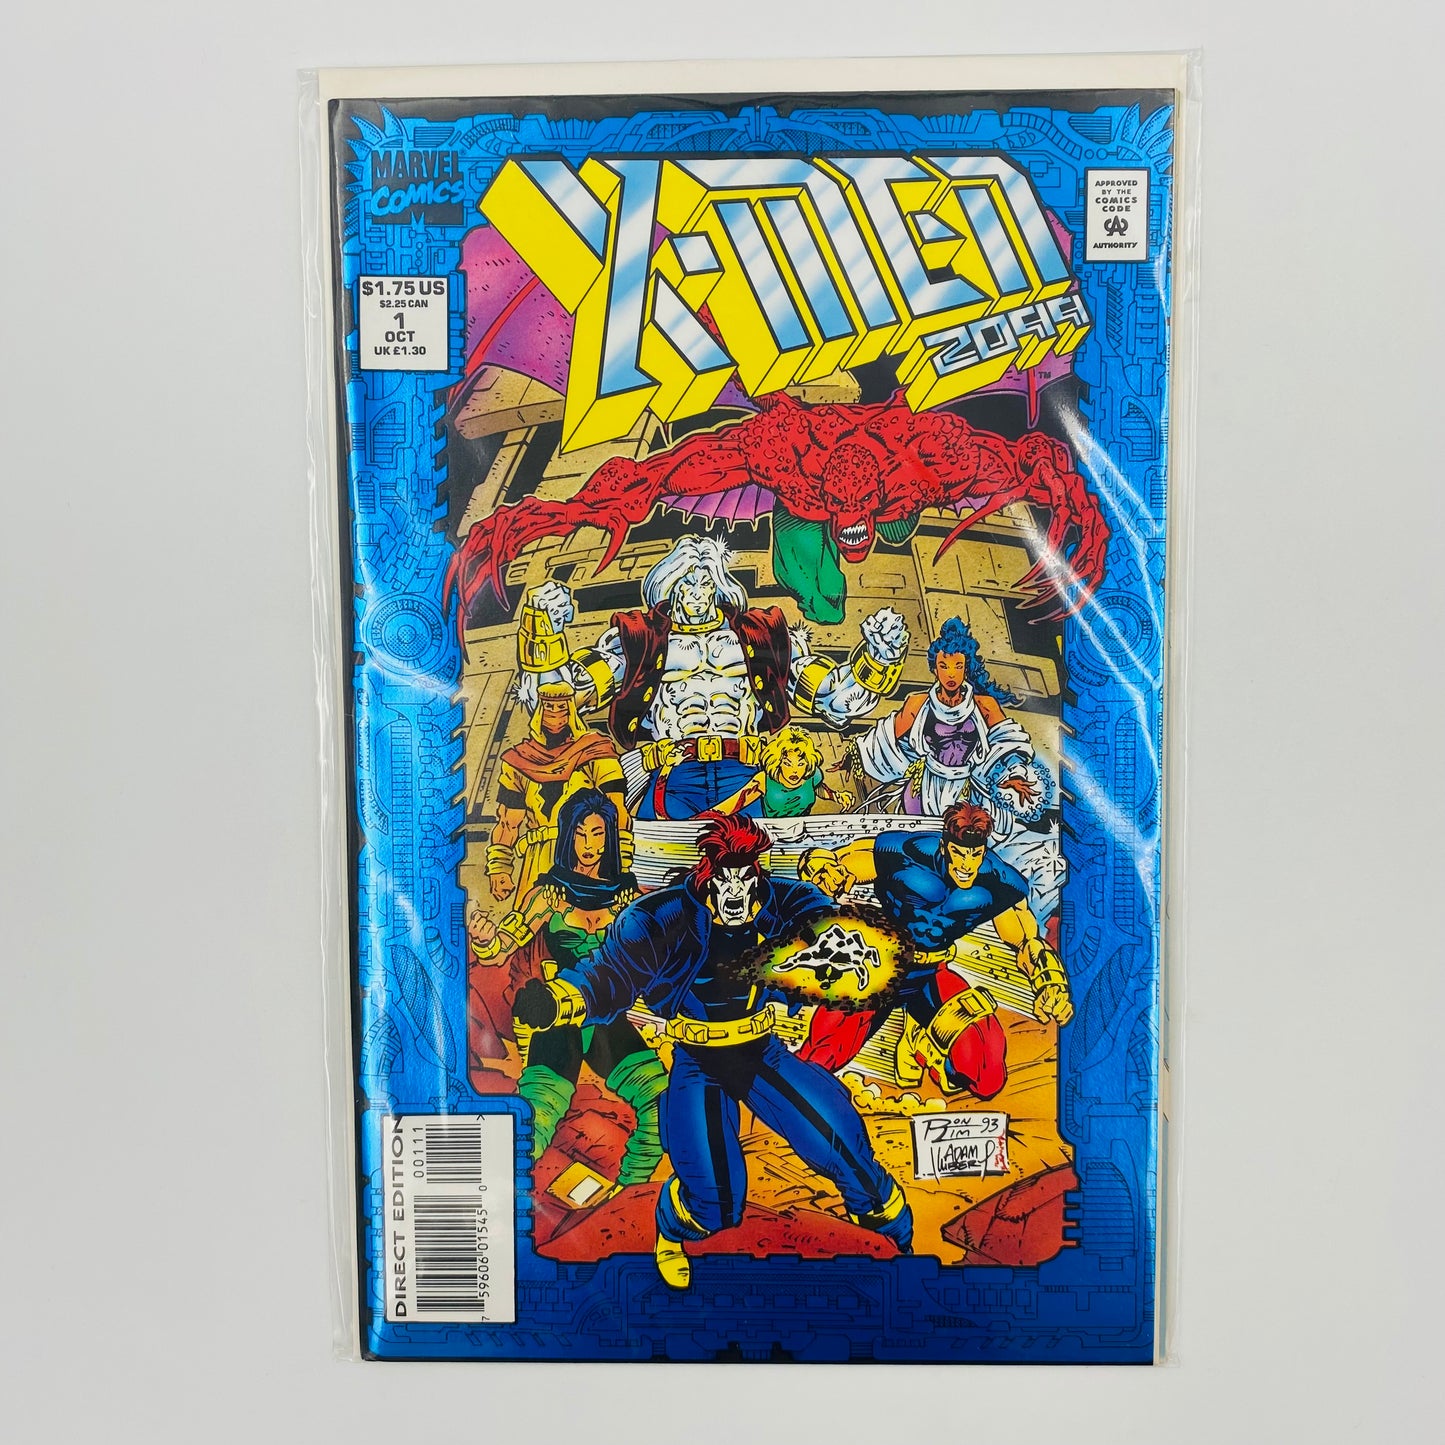 X-Men 2099 #1 (1993) Marvel 2099